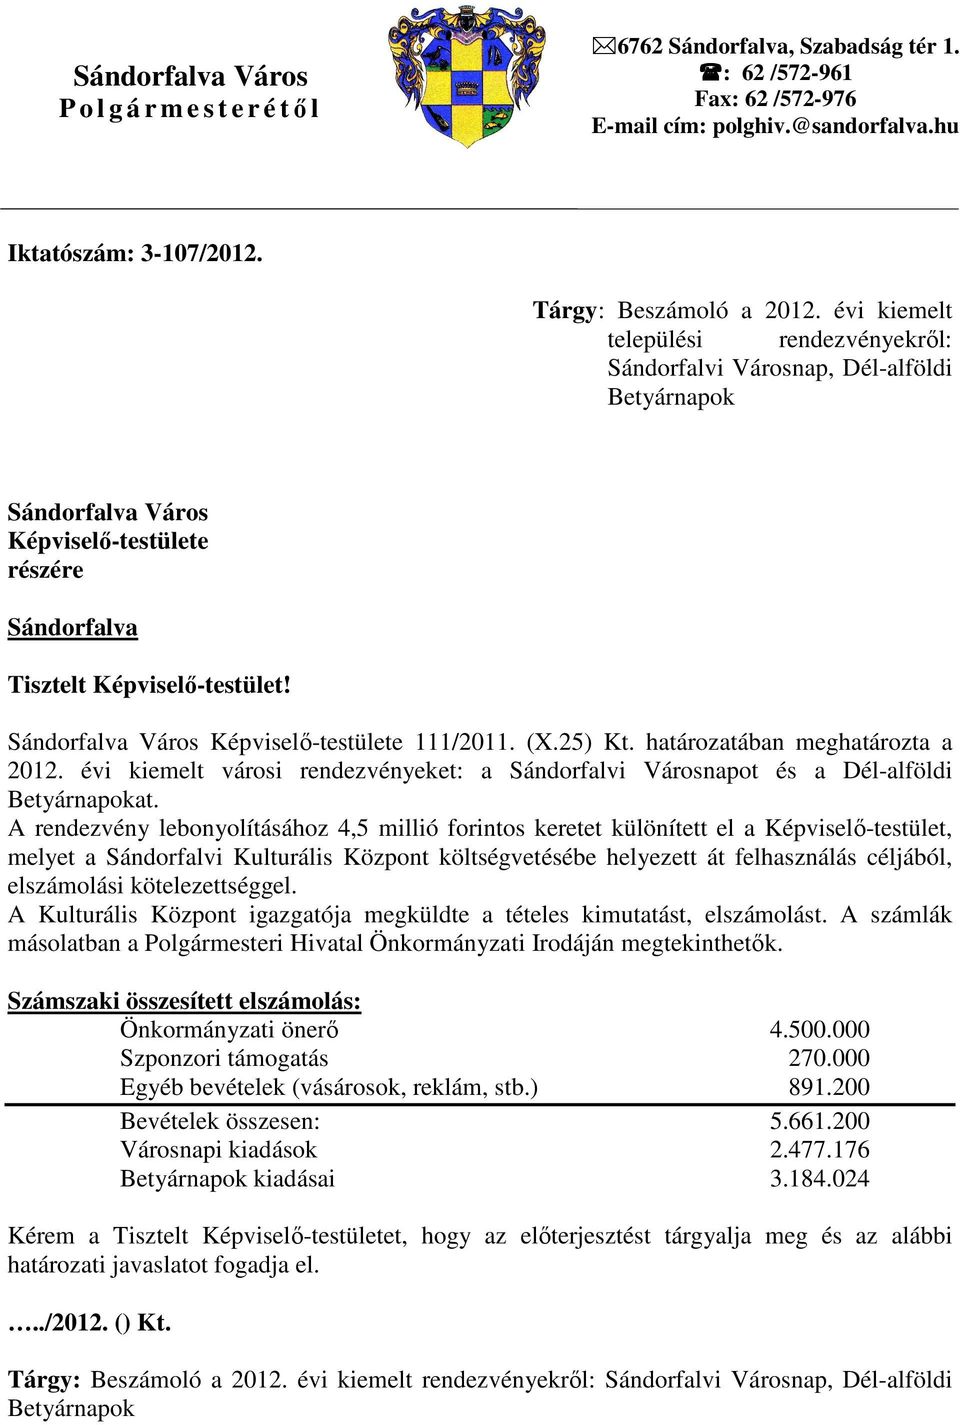 Sándorfalva Város Képviselı-testülete 111/2011. (X.25) Kt. határozatában meghatározta a 2012. évi kiemelt városi rendezvényeket: a Sándorfalvi Városnapot és a Dél-alföldi Betyárnapokat.